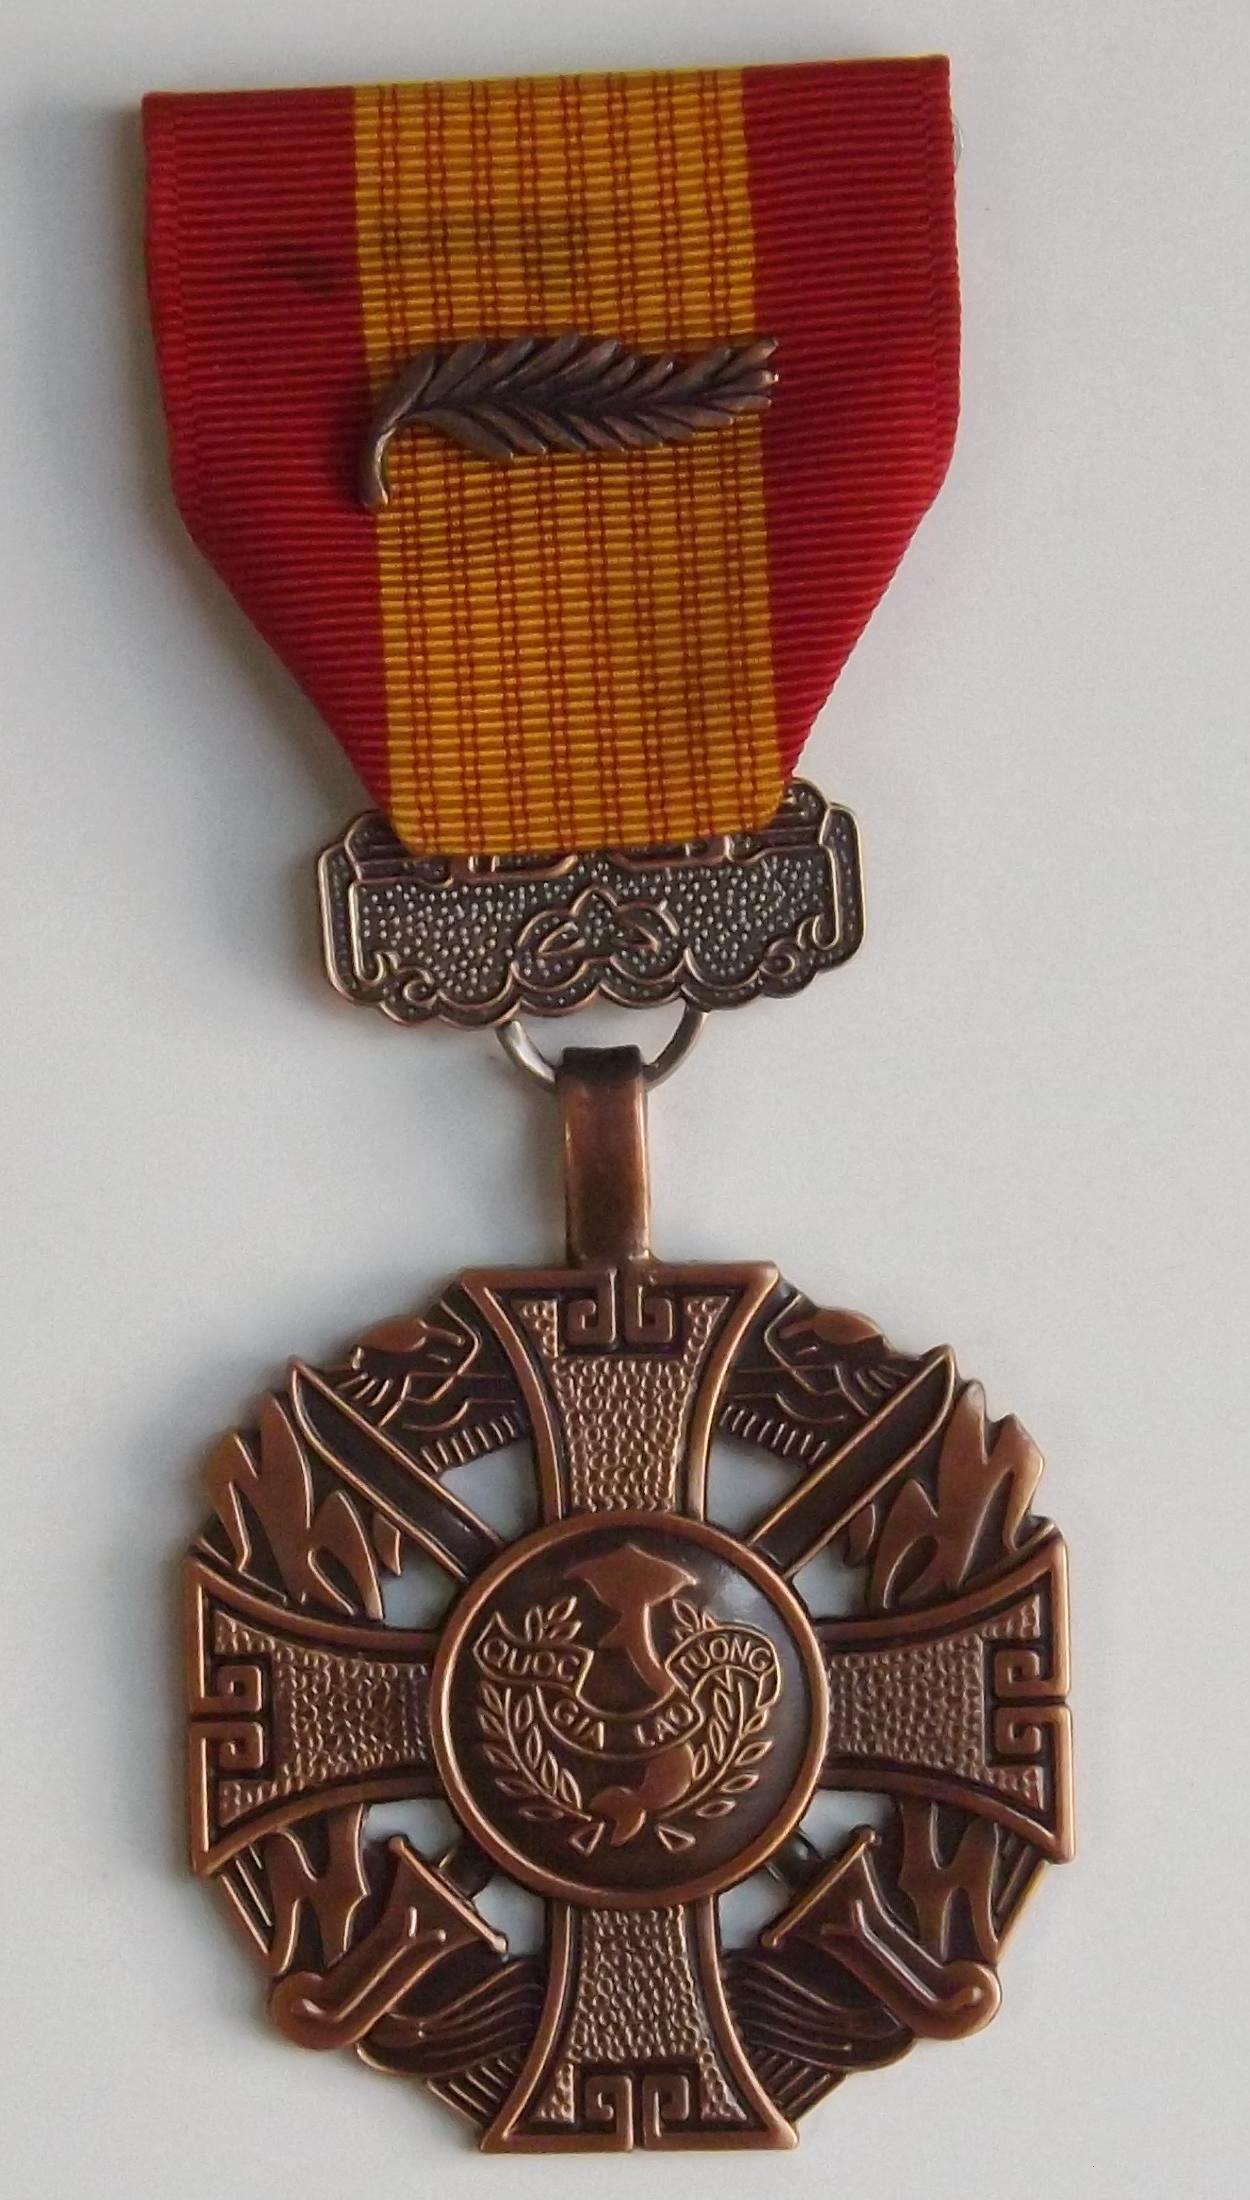 Vietnam Gallantry Cross Medal